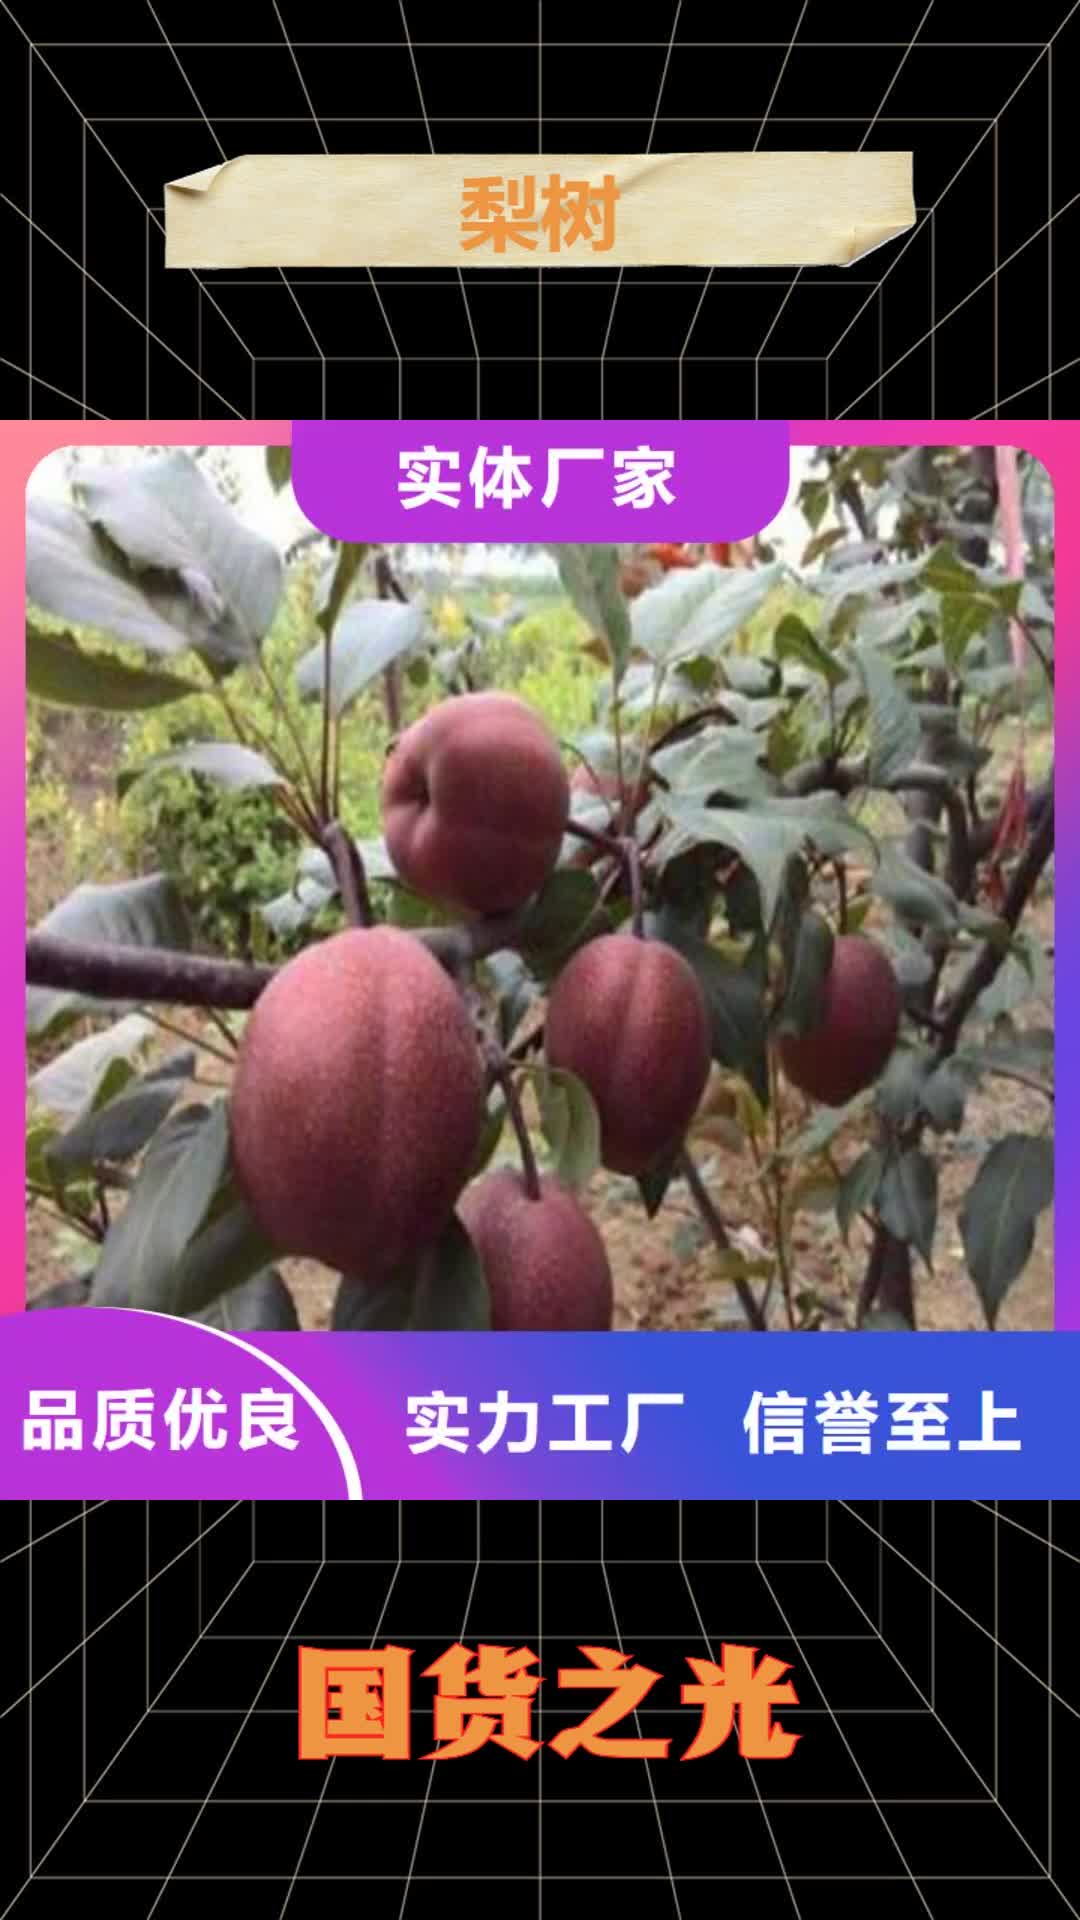 【济南 梨树苹果苗厂家新品】